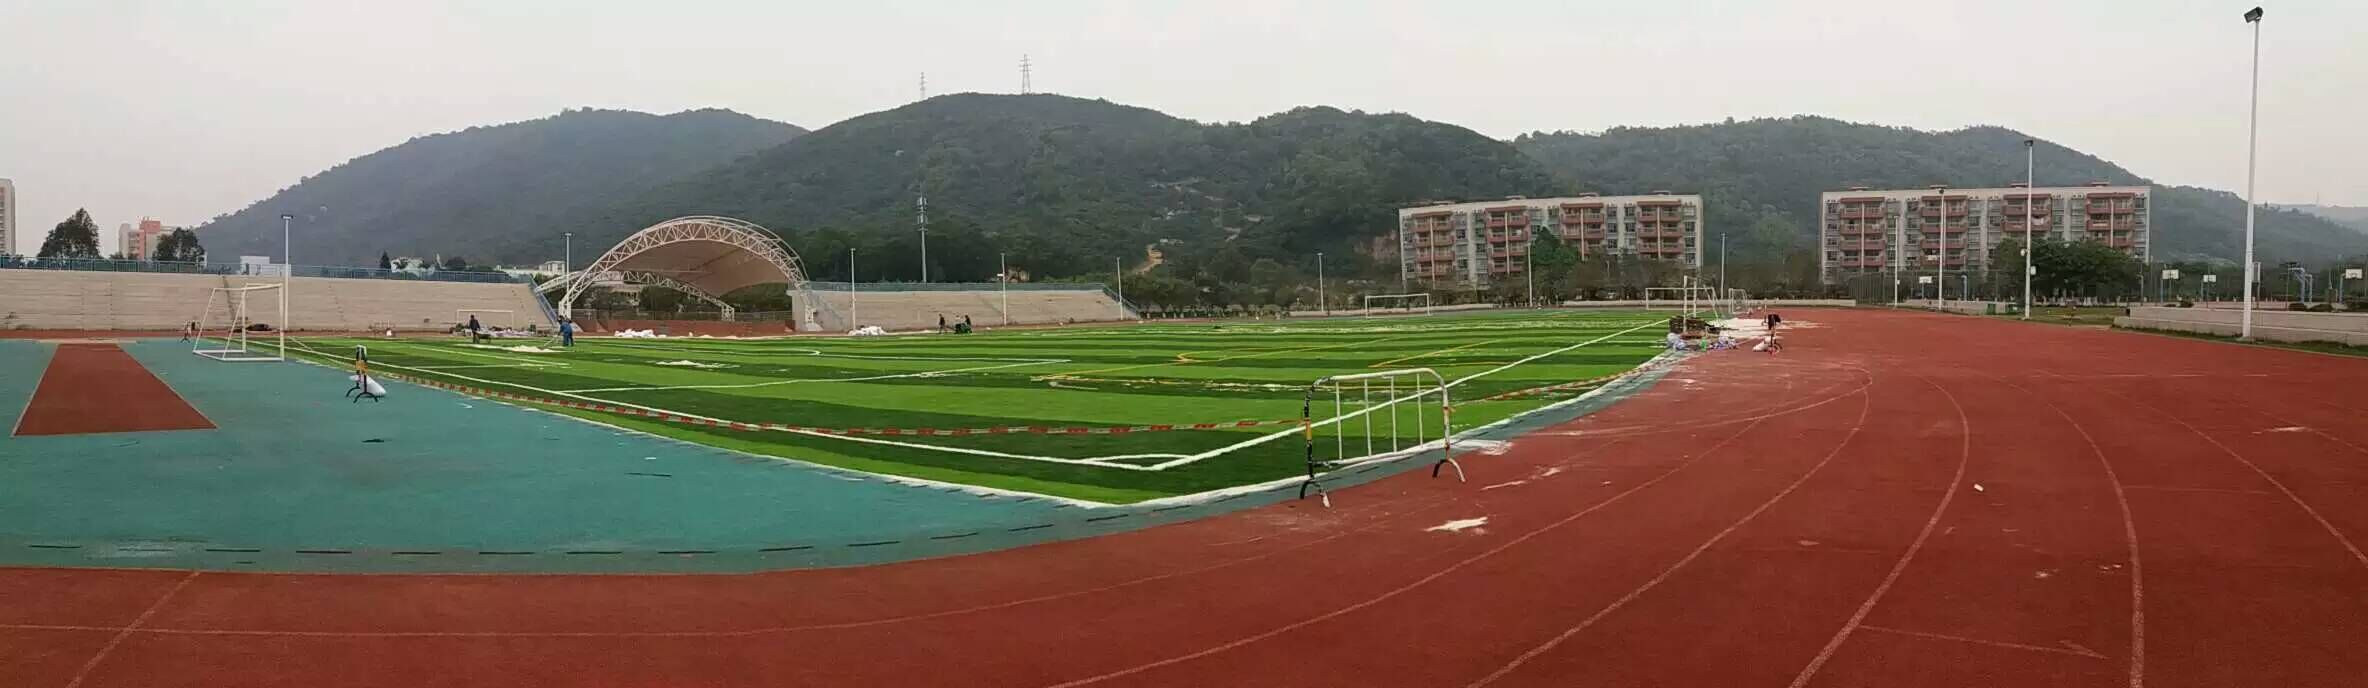 珠海吉林大学人造草足球场铺设现场实拍